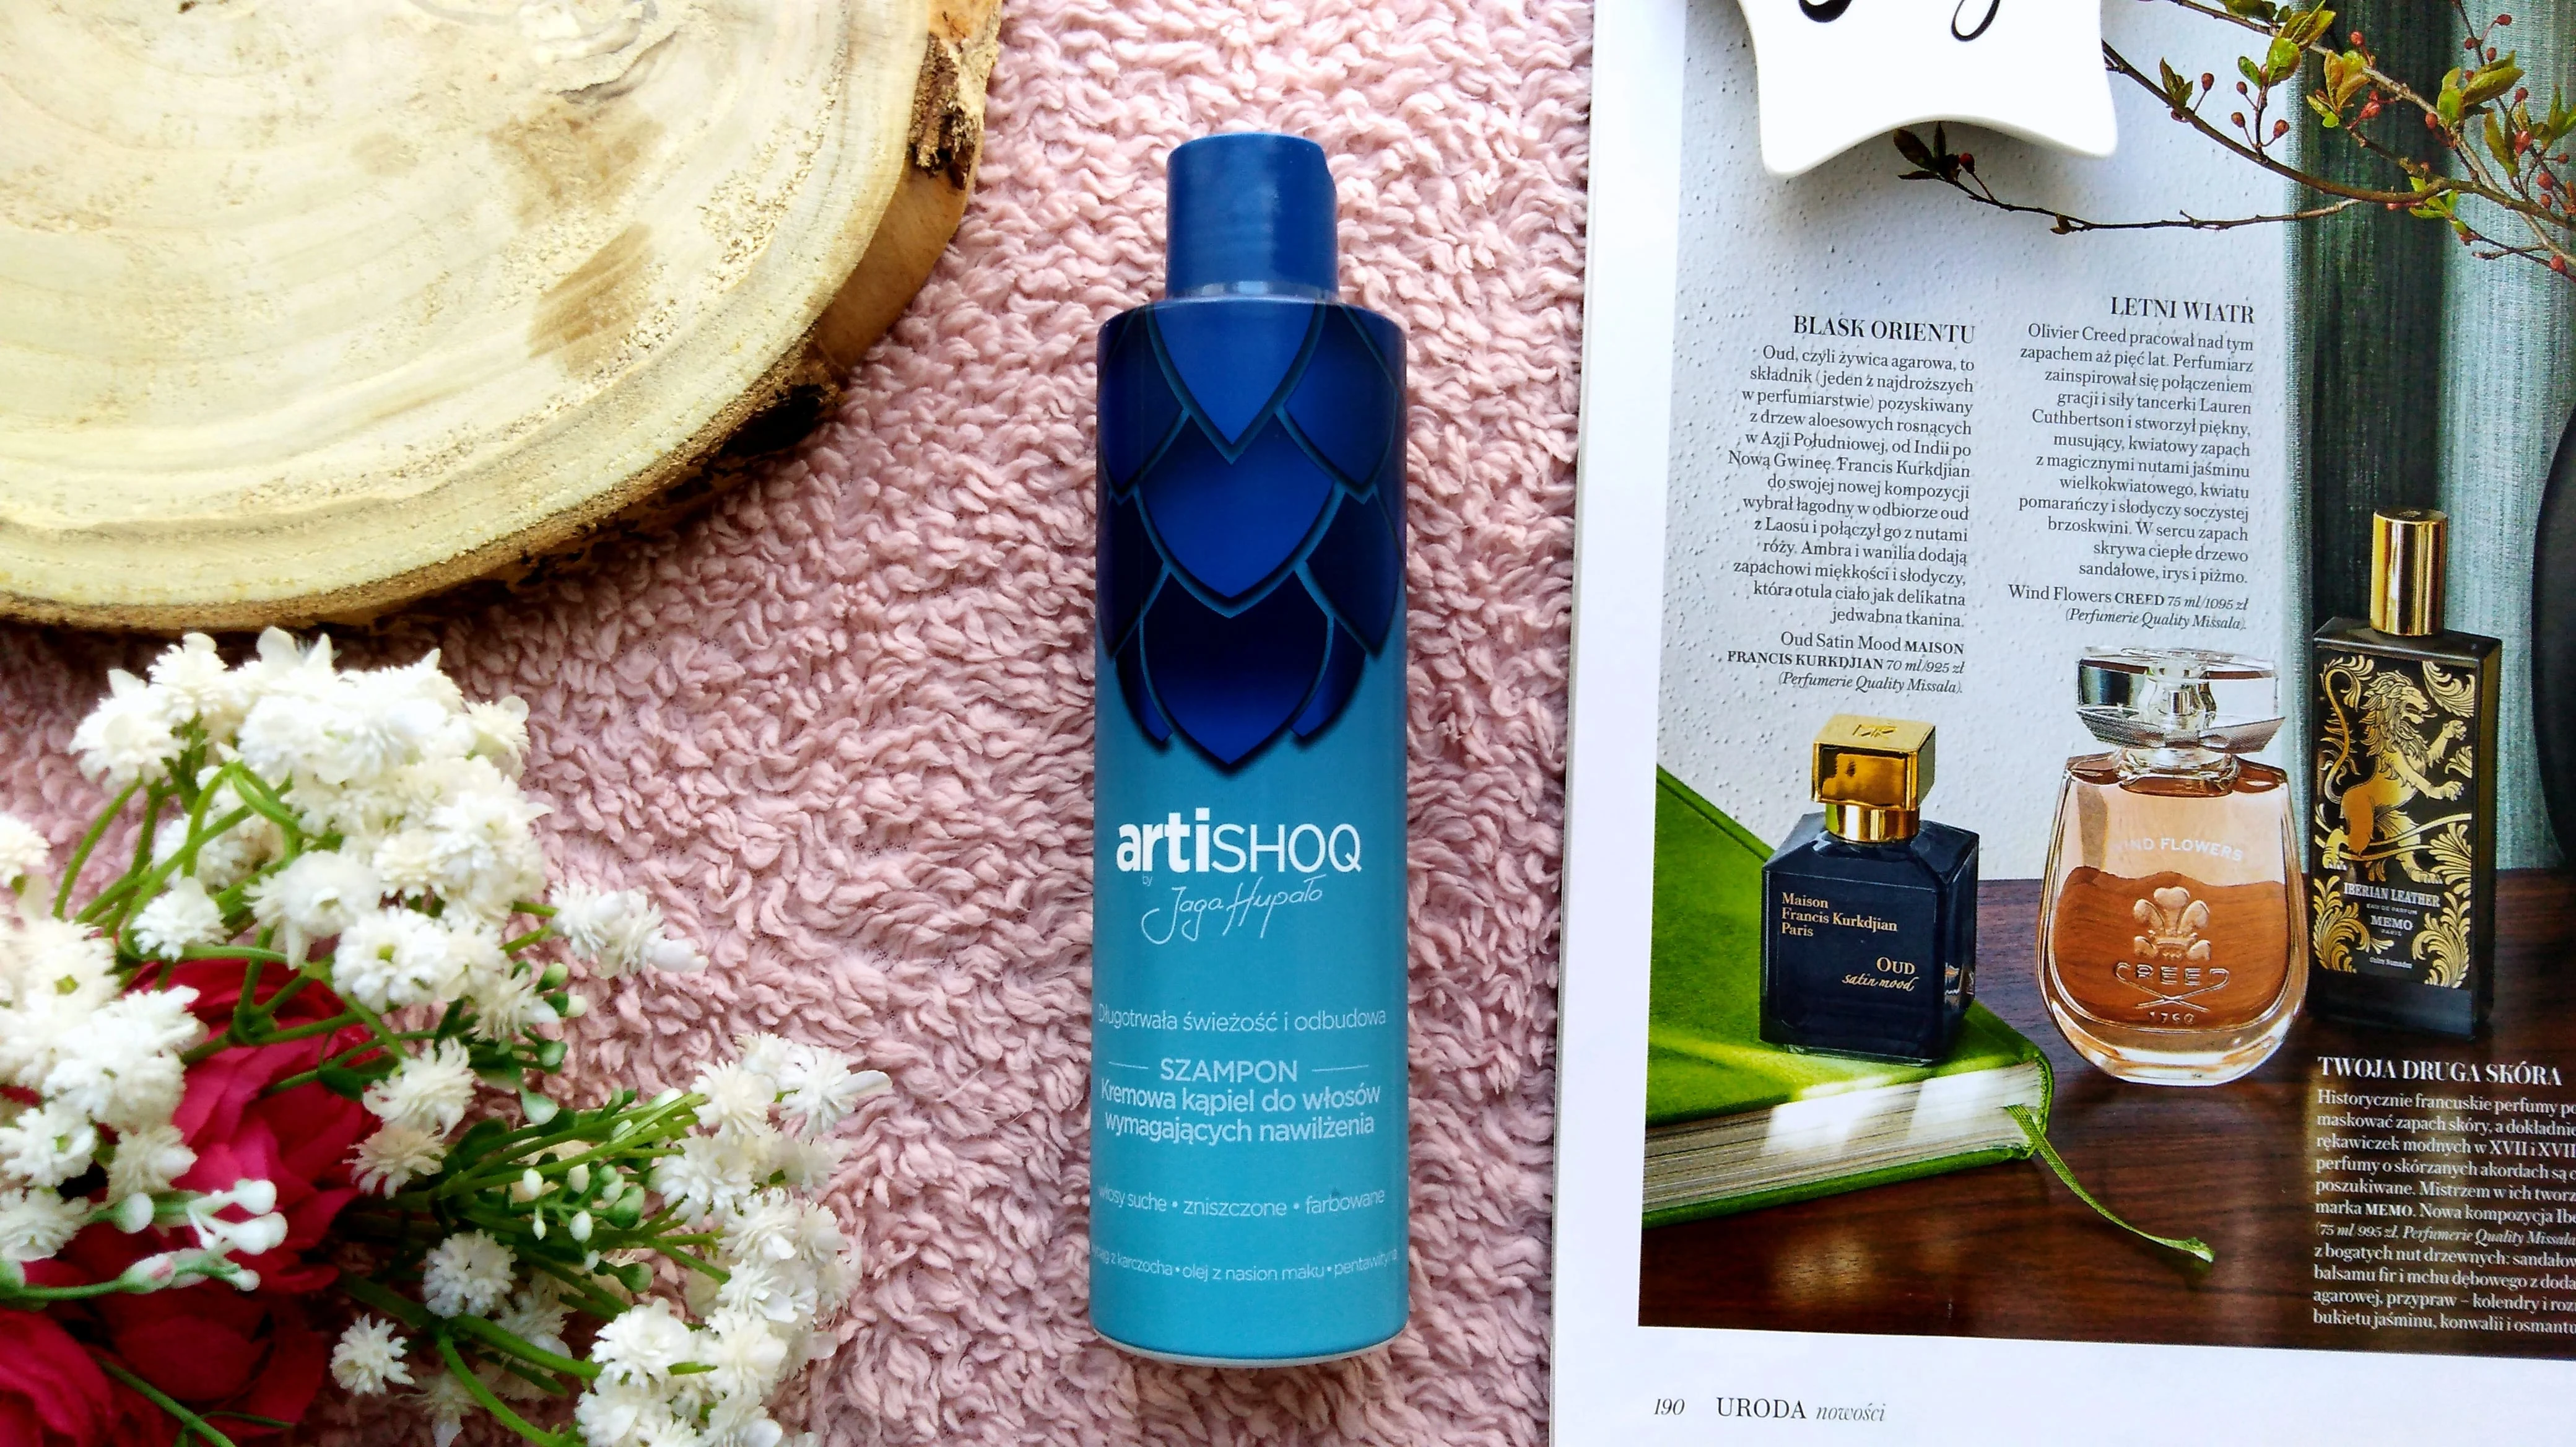 artishiq szampon, artishoq szampon-kremowa kąpiel do włosów